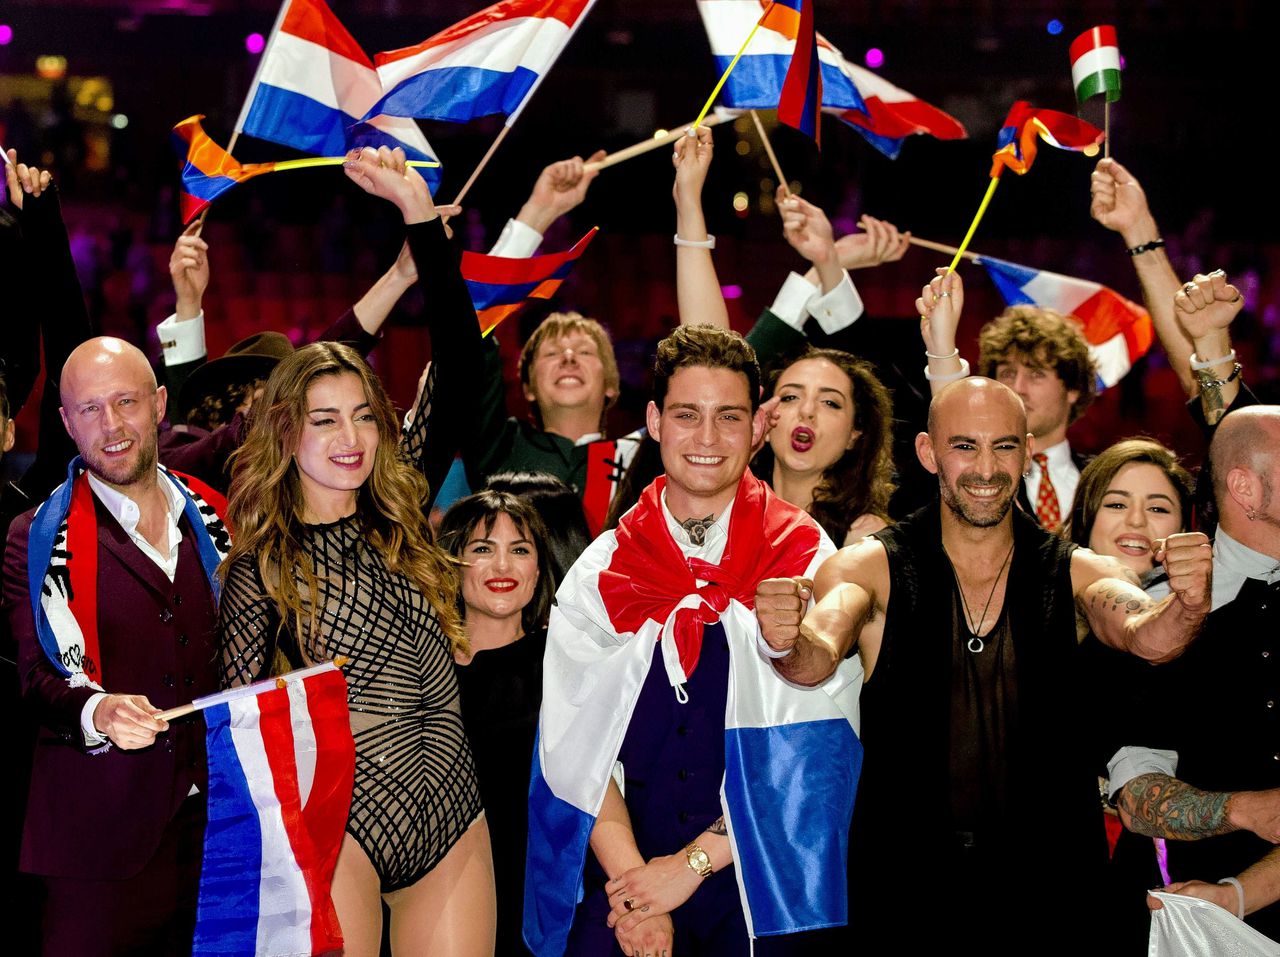 Nederlandse kandidaat Douwe Bob na de halve finale van het Eurovisie Songfestival gisteravond in Stockholm, geflankeerd door (vlnr) zijn sologitarist JP Hoestra en concurrenten Iveta Mukuchyan (Armenië) en Francois Micheletto (Cyprus).